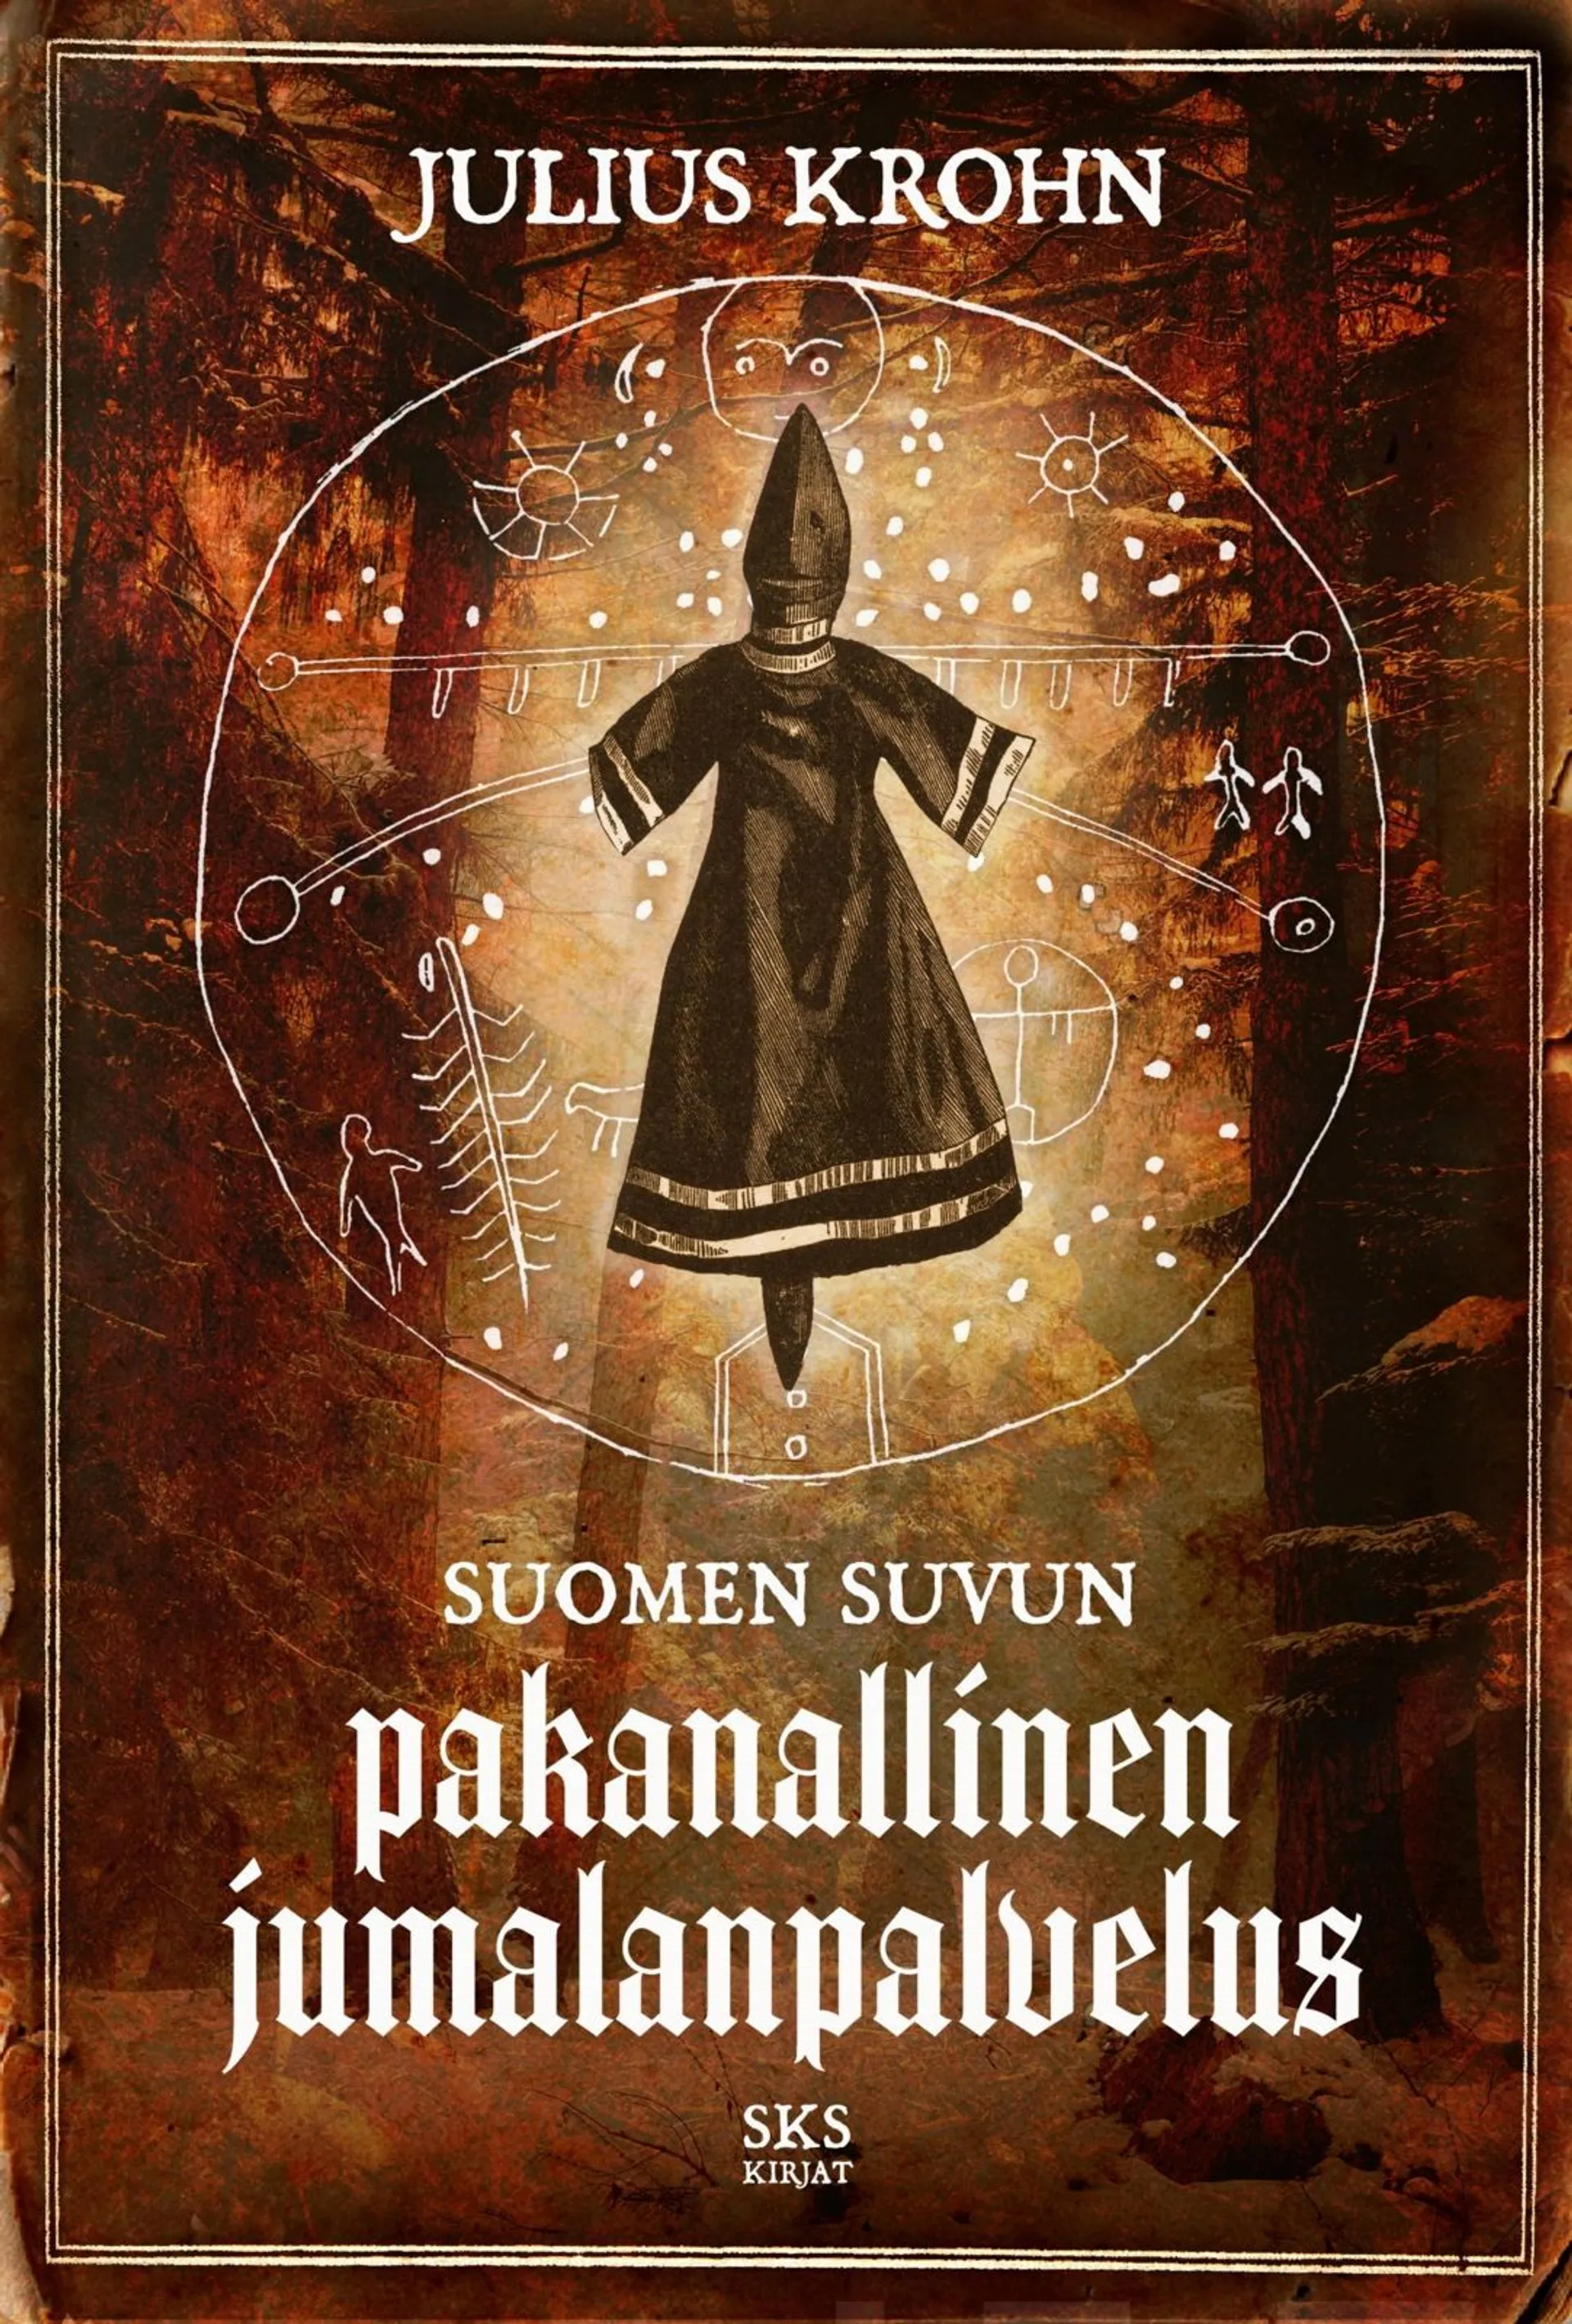 Krohn, Suomen suvun pakanallinen jumalanpalvelus